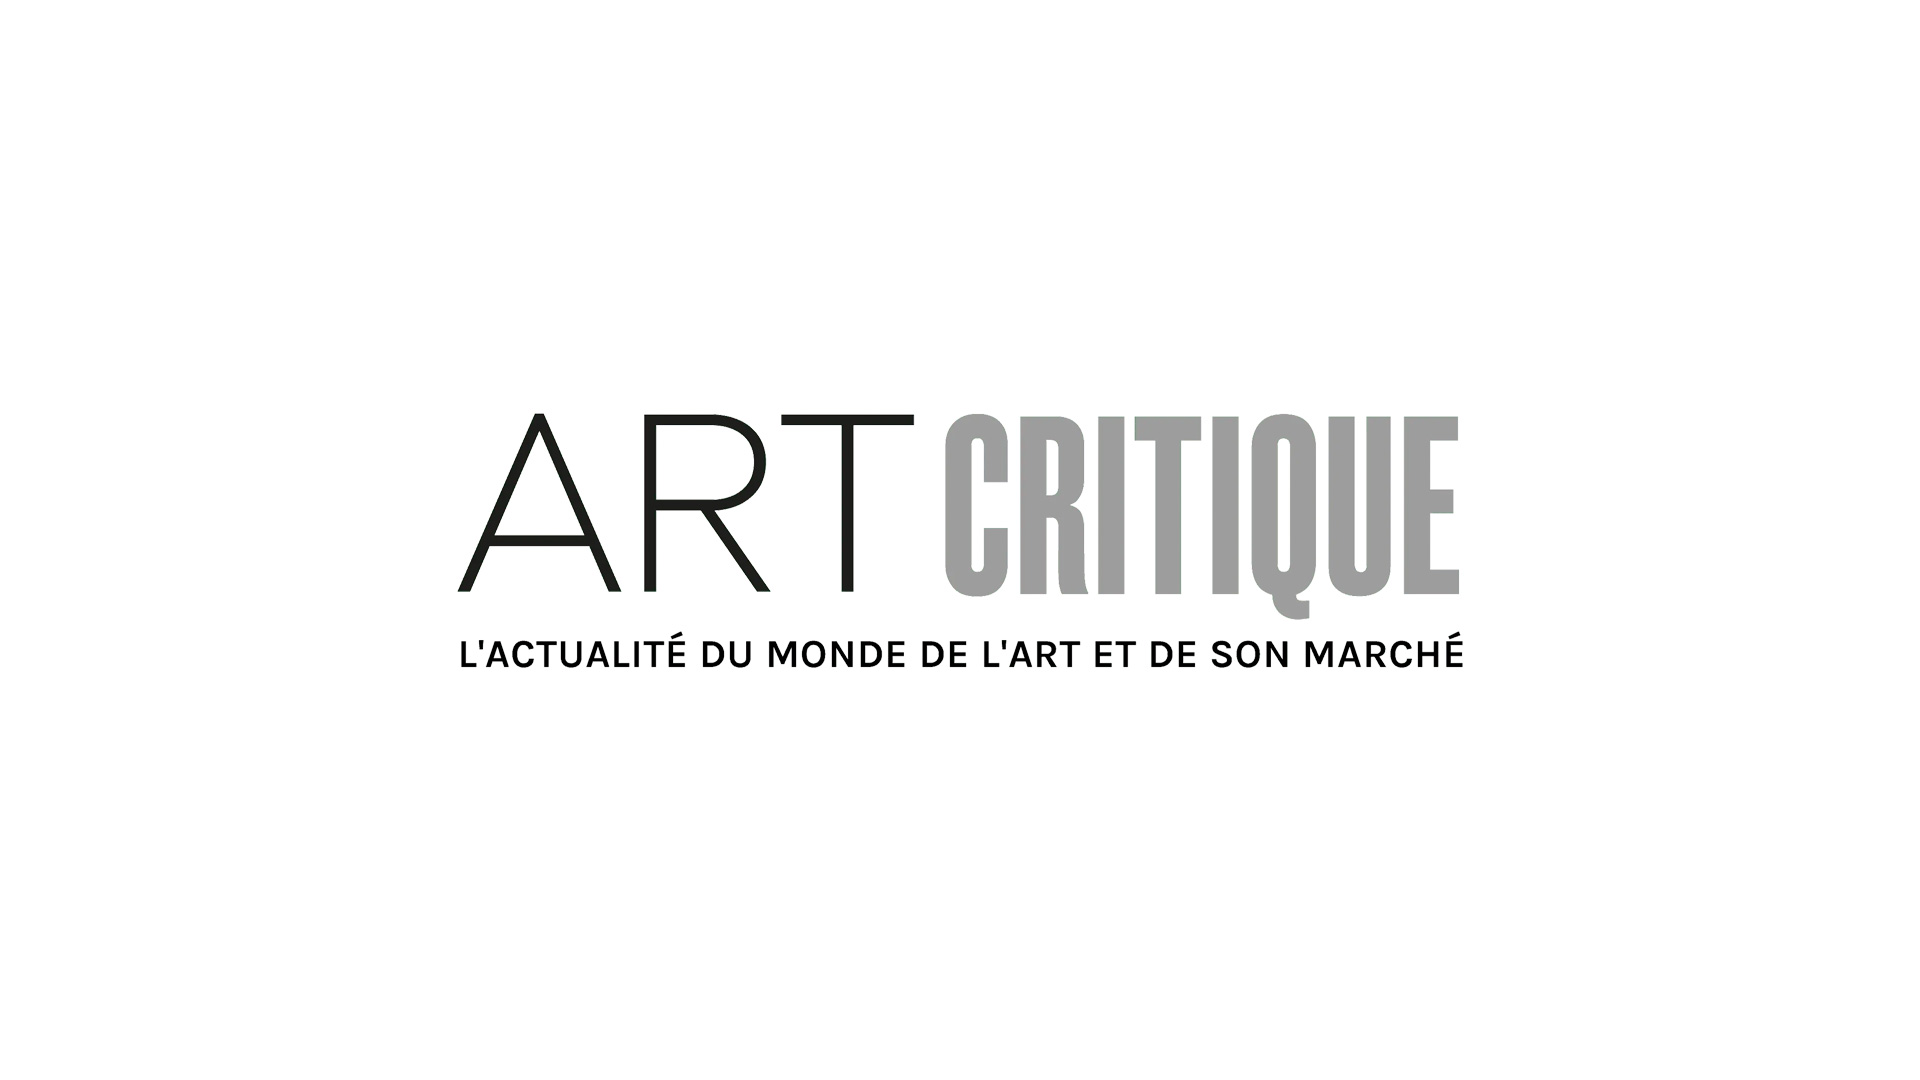 La phase figurative de Mondrian au Musée Marmottan Monet